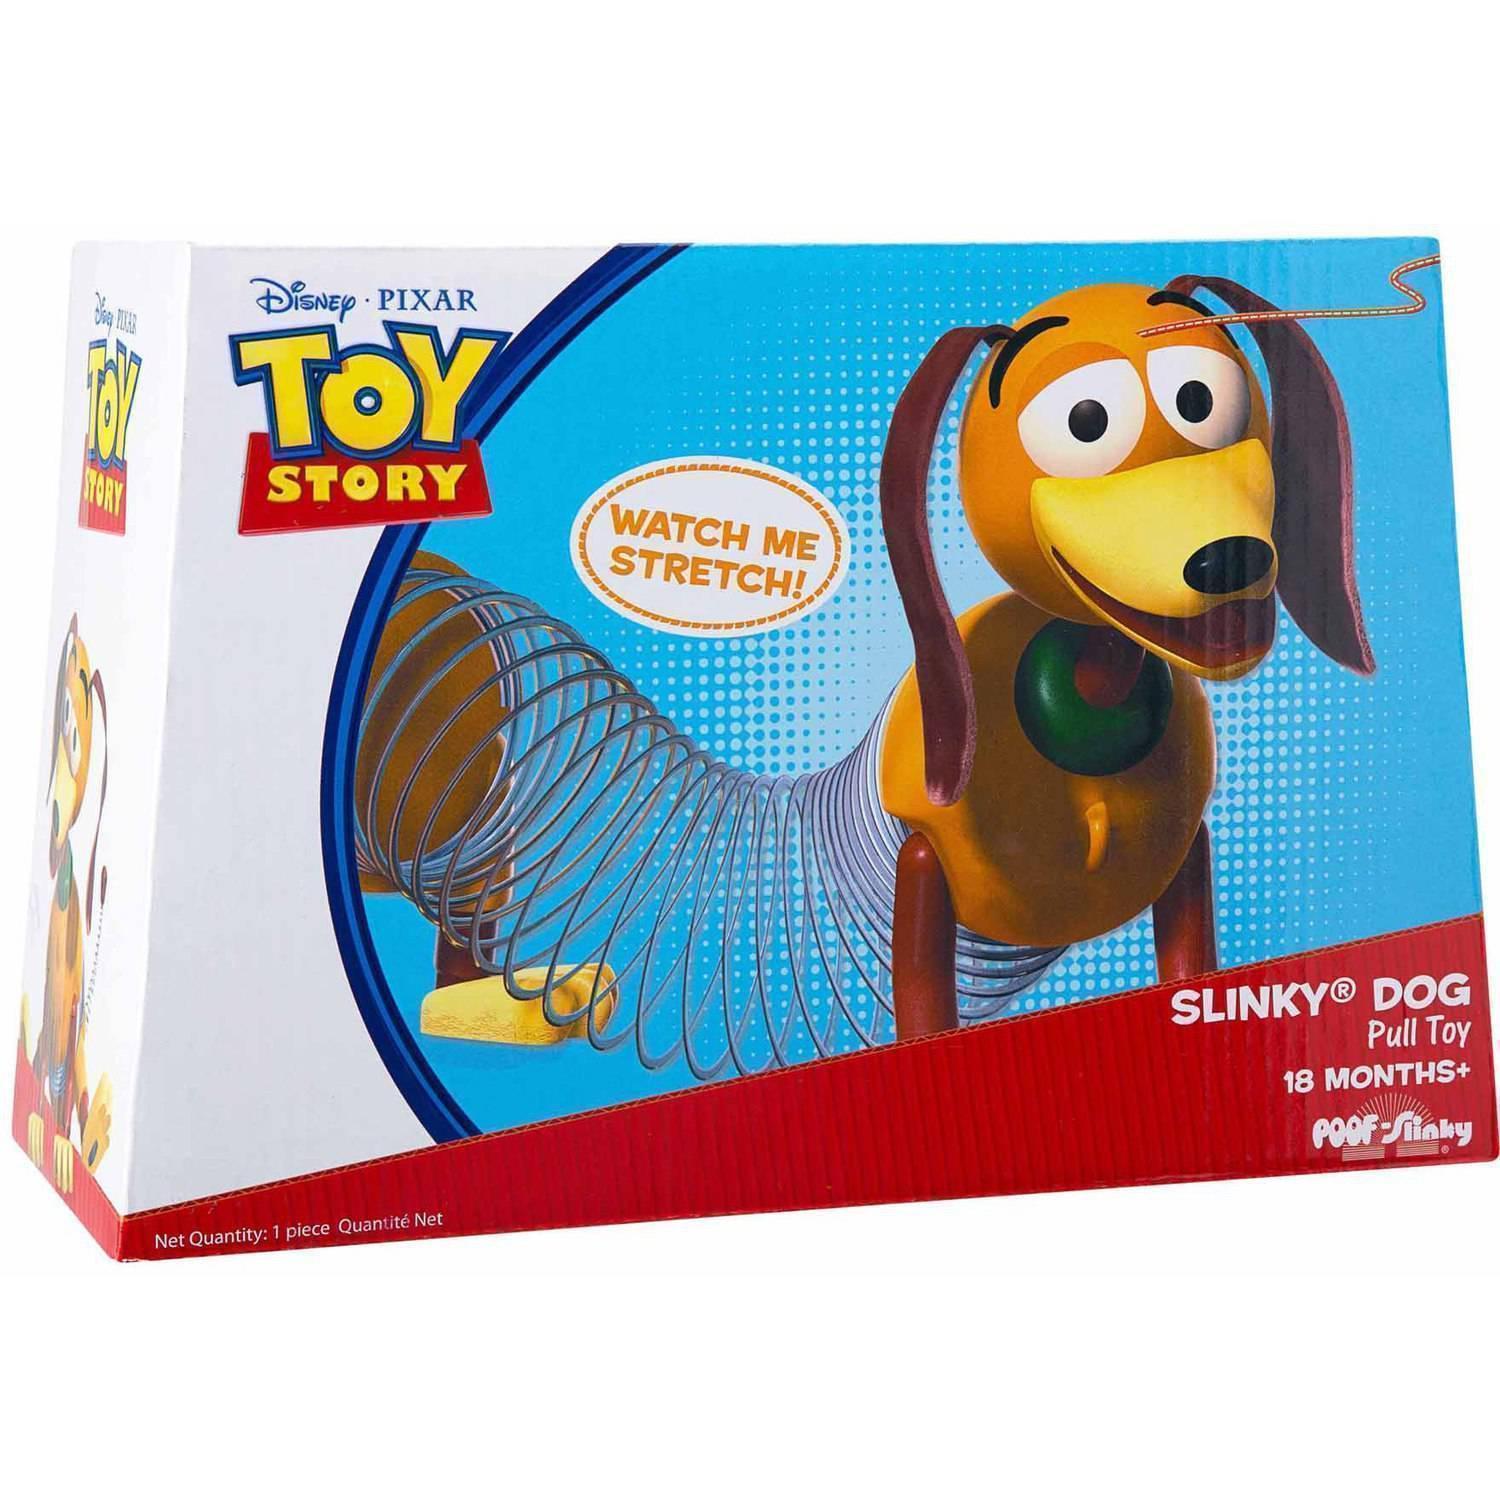 Slinky Dog Pull Toy